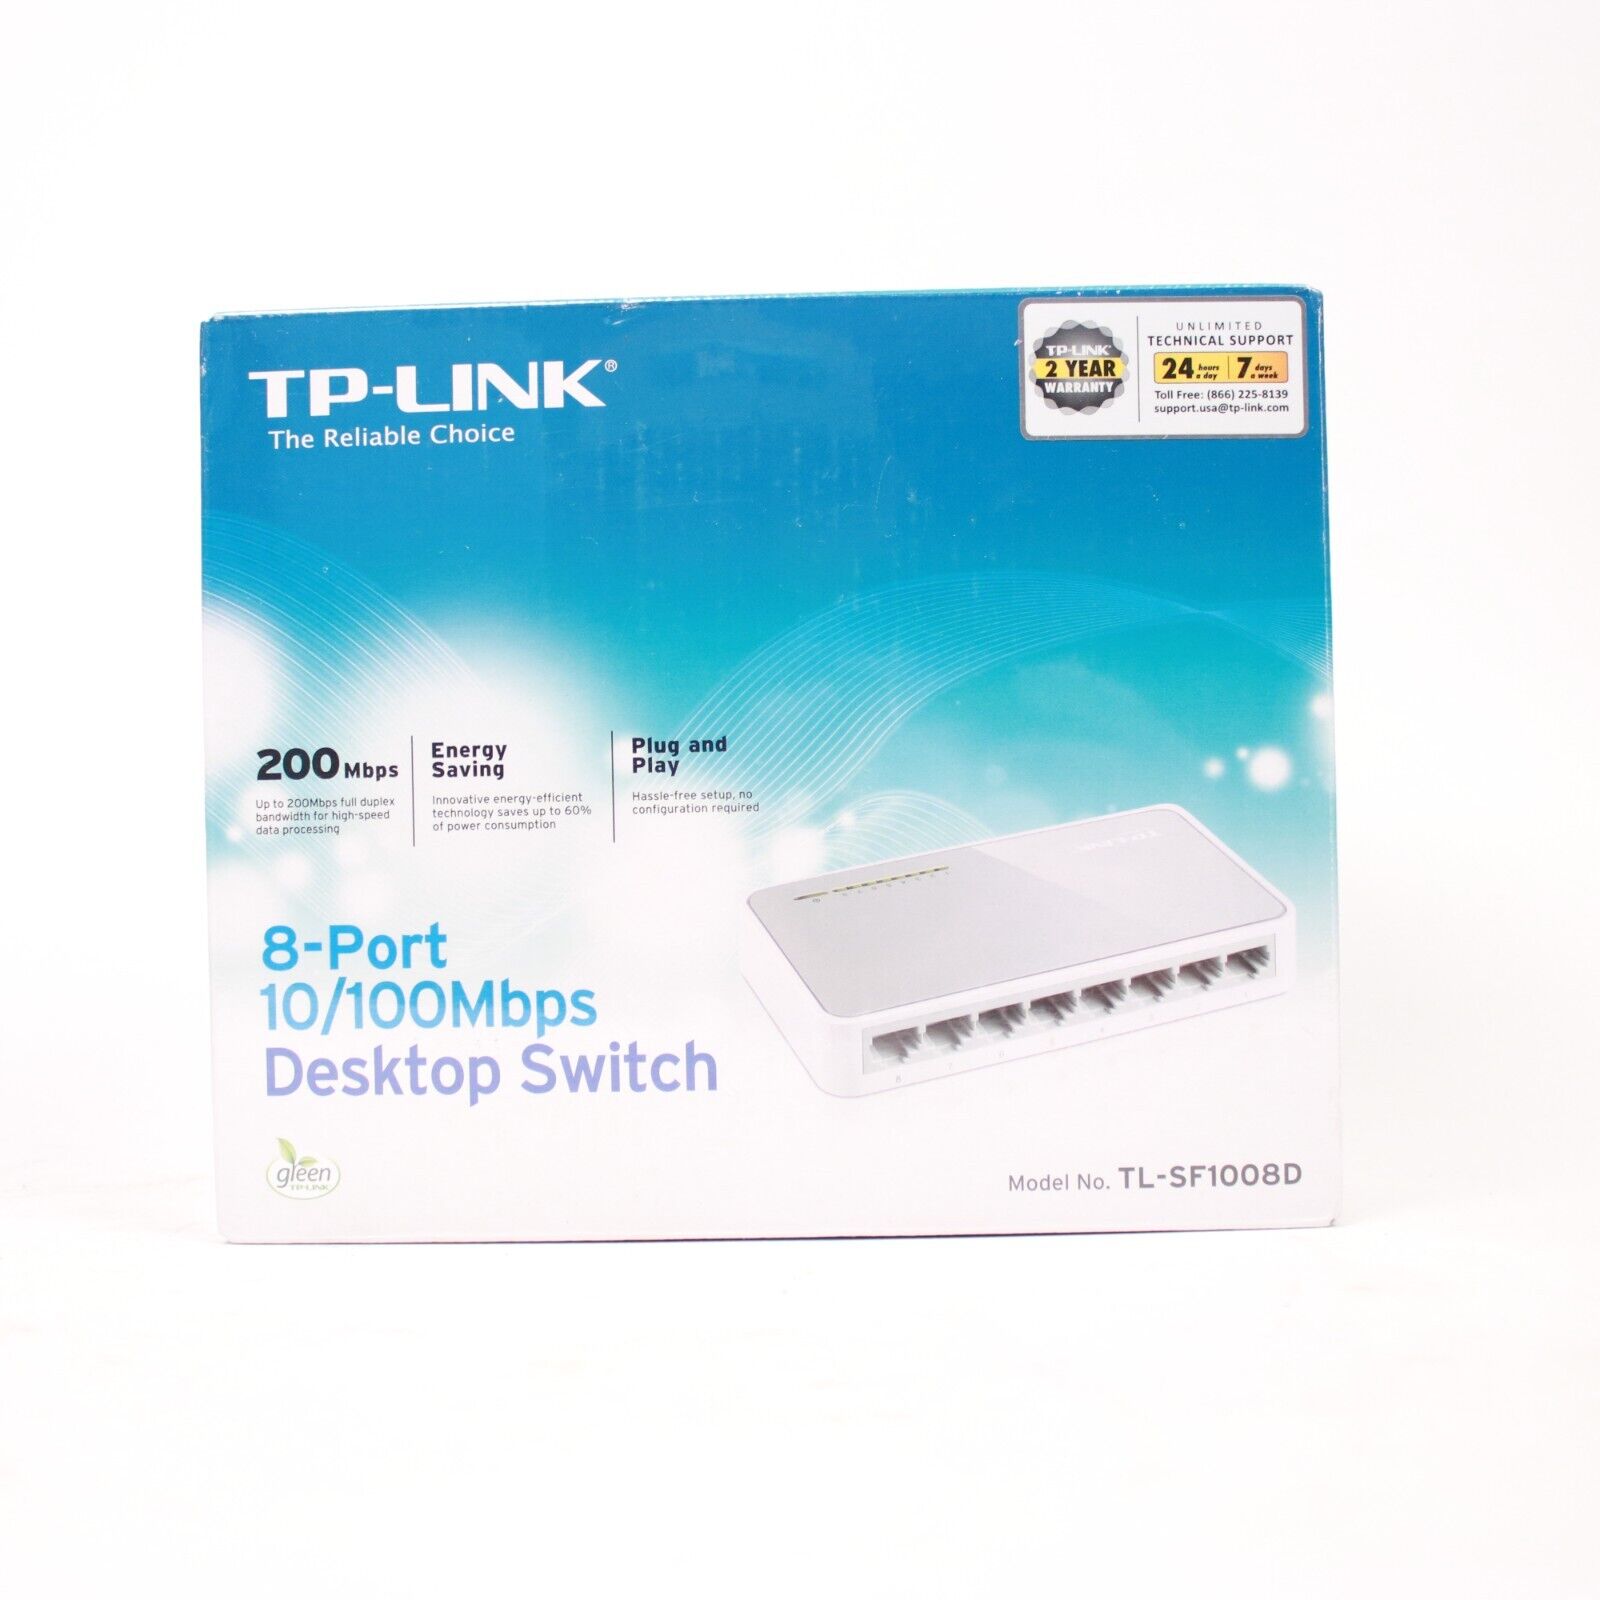 TP-Link TL-SF1008D 8-Port 10/100Mbps Fast Ethernet Desktop Switch